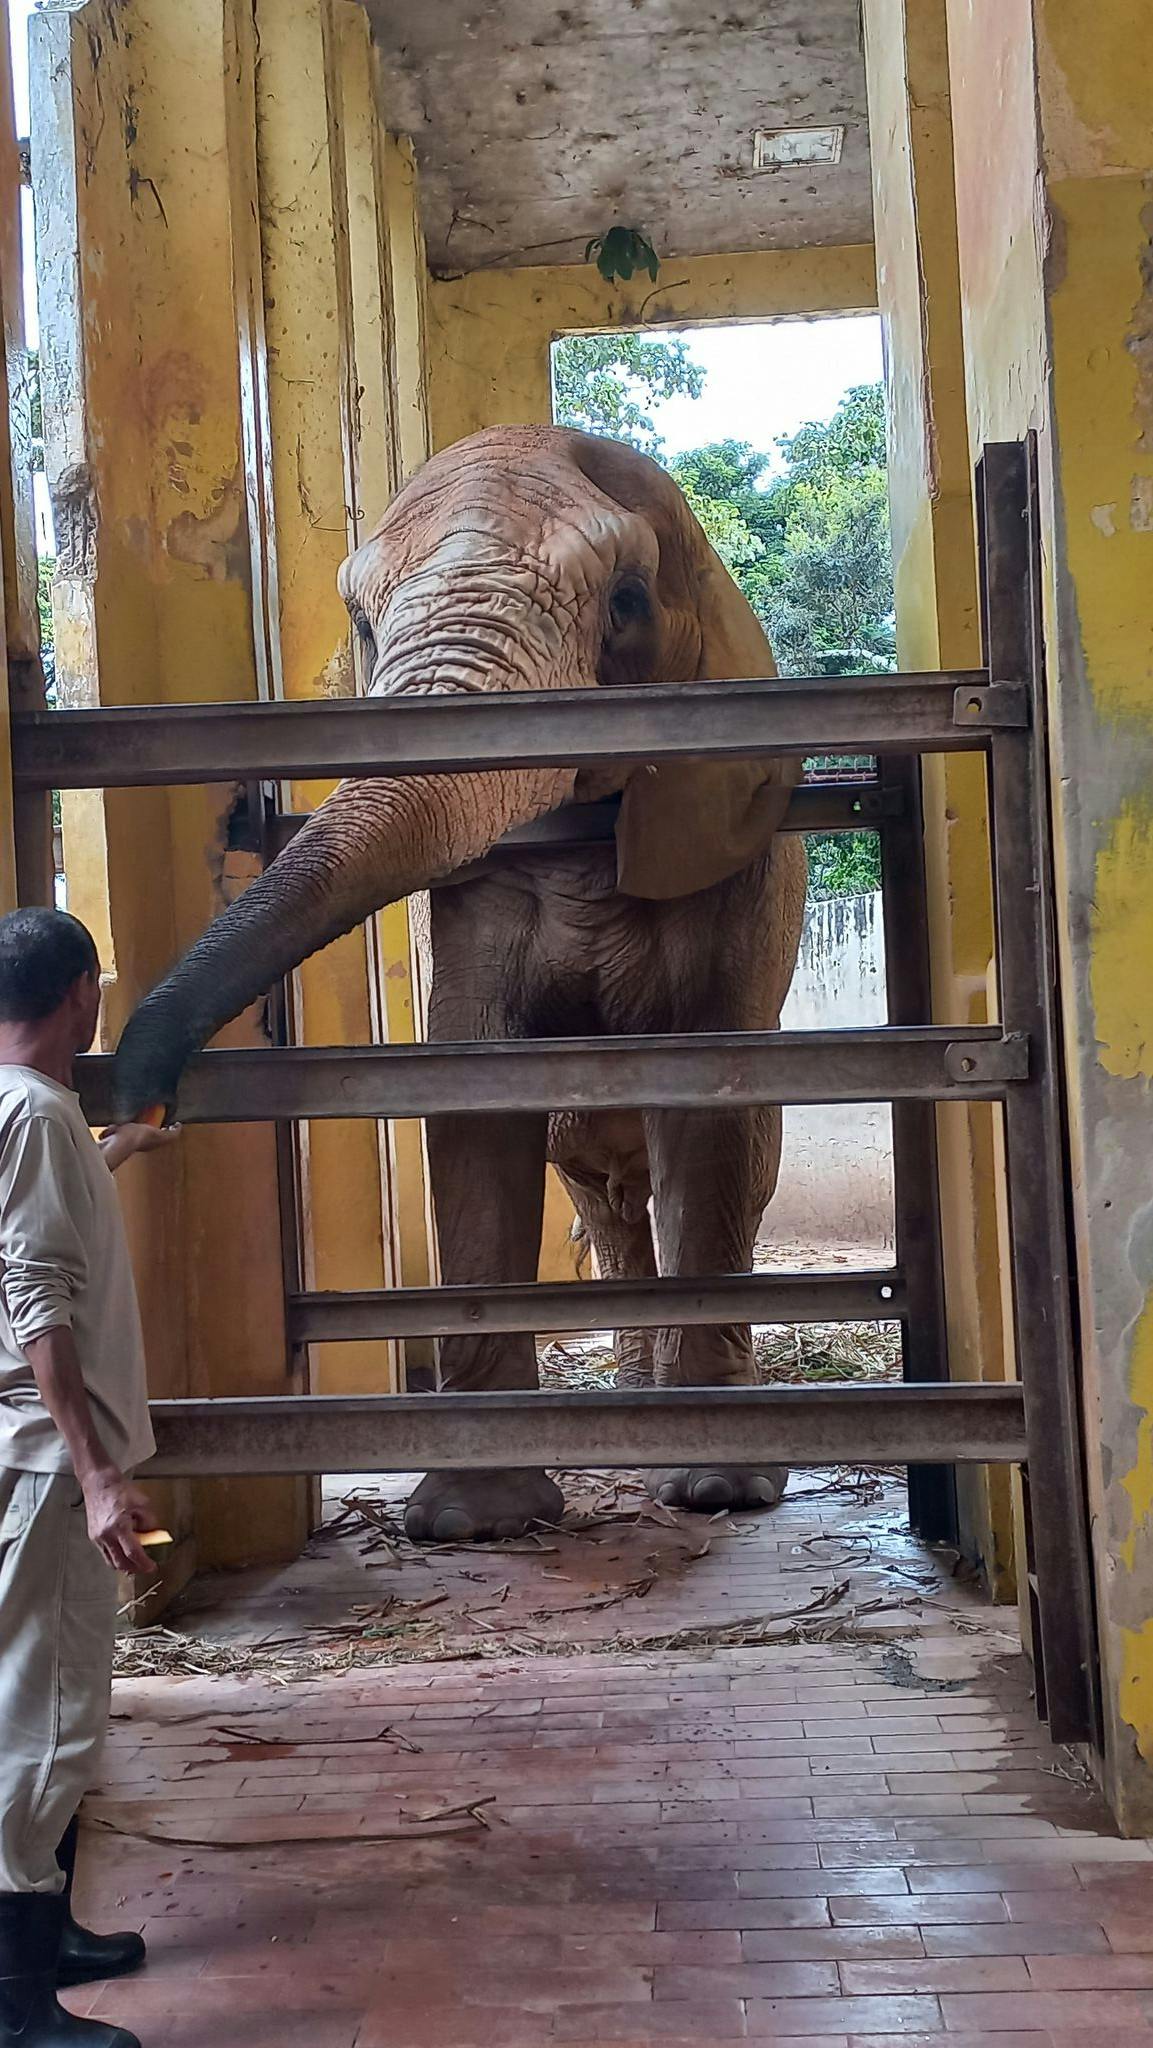 a big elephant inside his enclosure getting fed by a man 